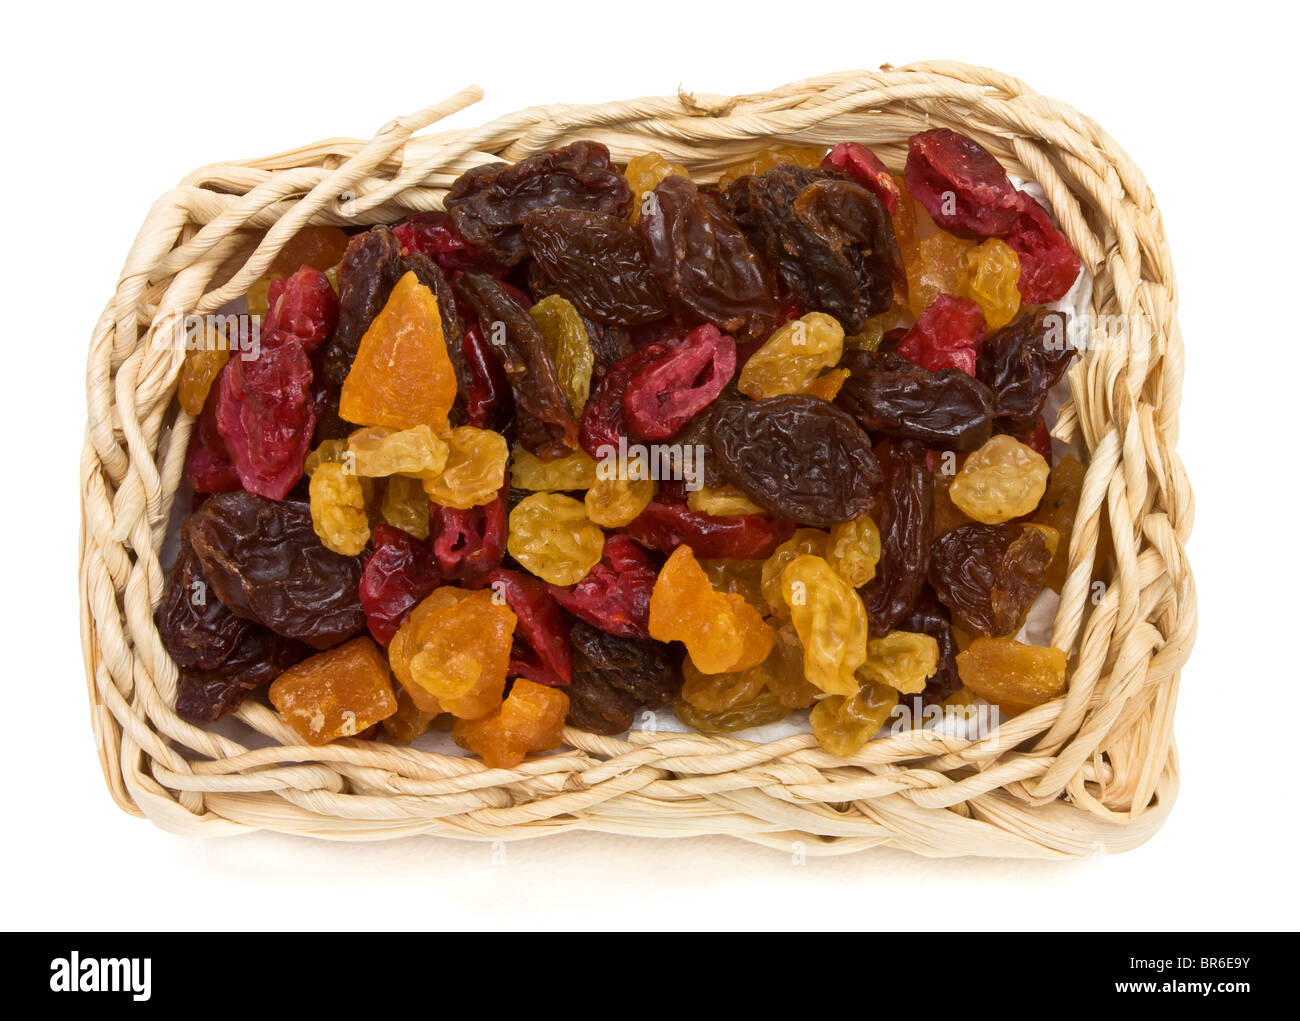 Frutti essiccati misti di albicocche, uva sultanina, uva passa e mirtilli rossi nel cesto di vimini. Foto Stock